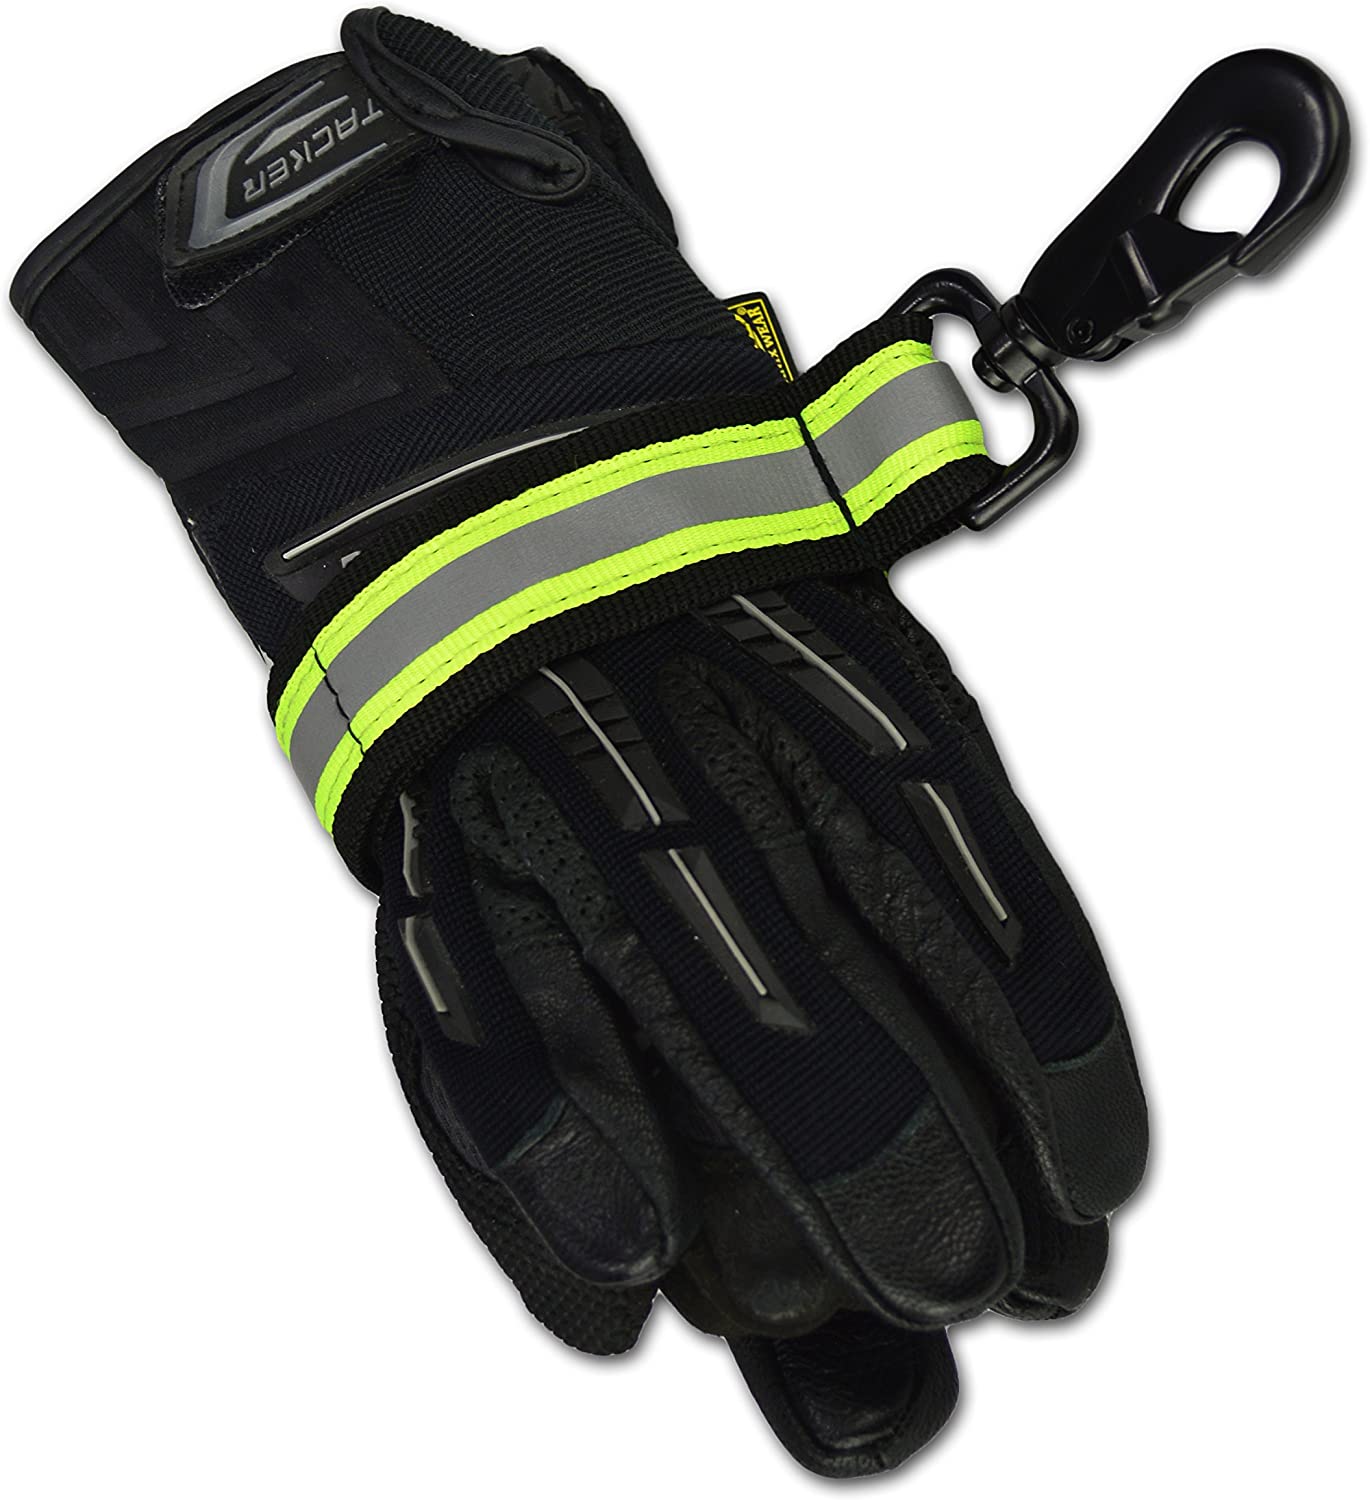 Heavy-Duty Firefighter Glove